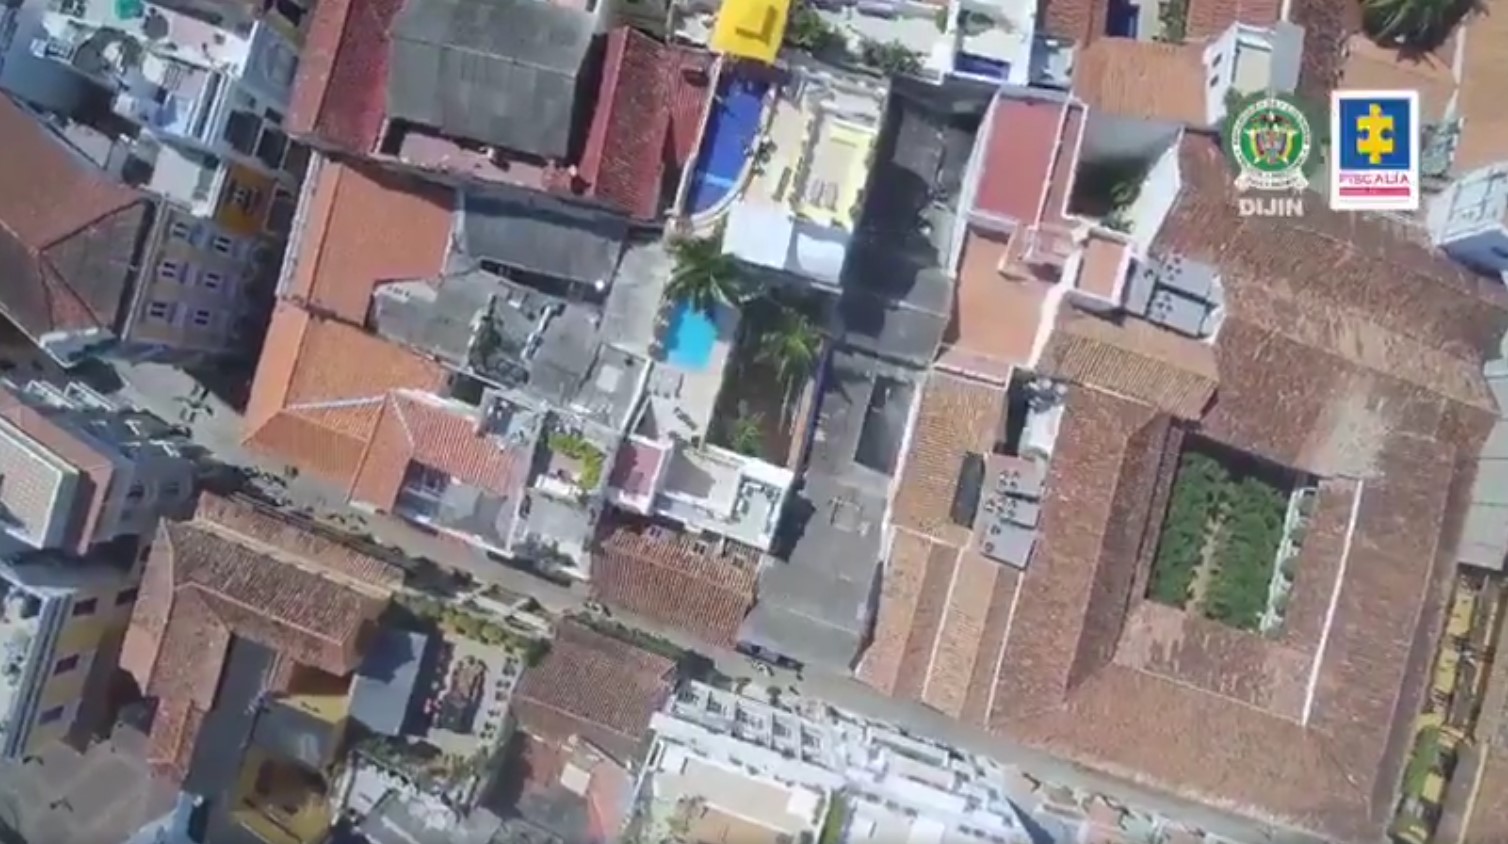 Allanan lujosos hoteles manejados por israelíes en Colombia donde prostituían a menores de edad (VIDEOS)